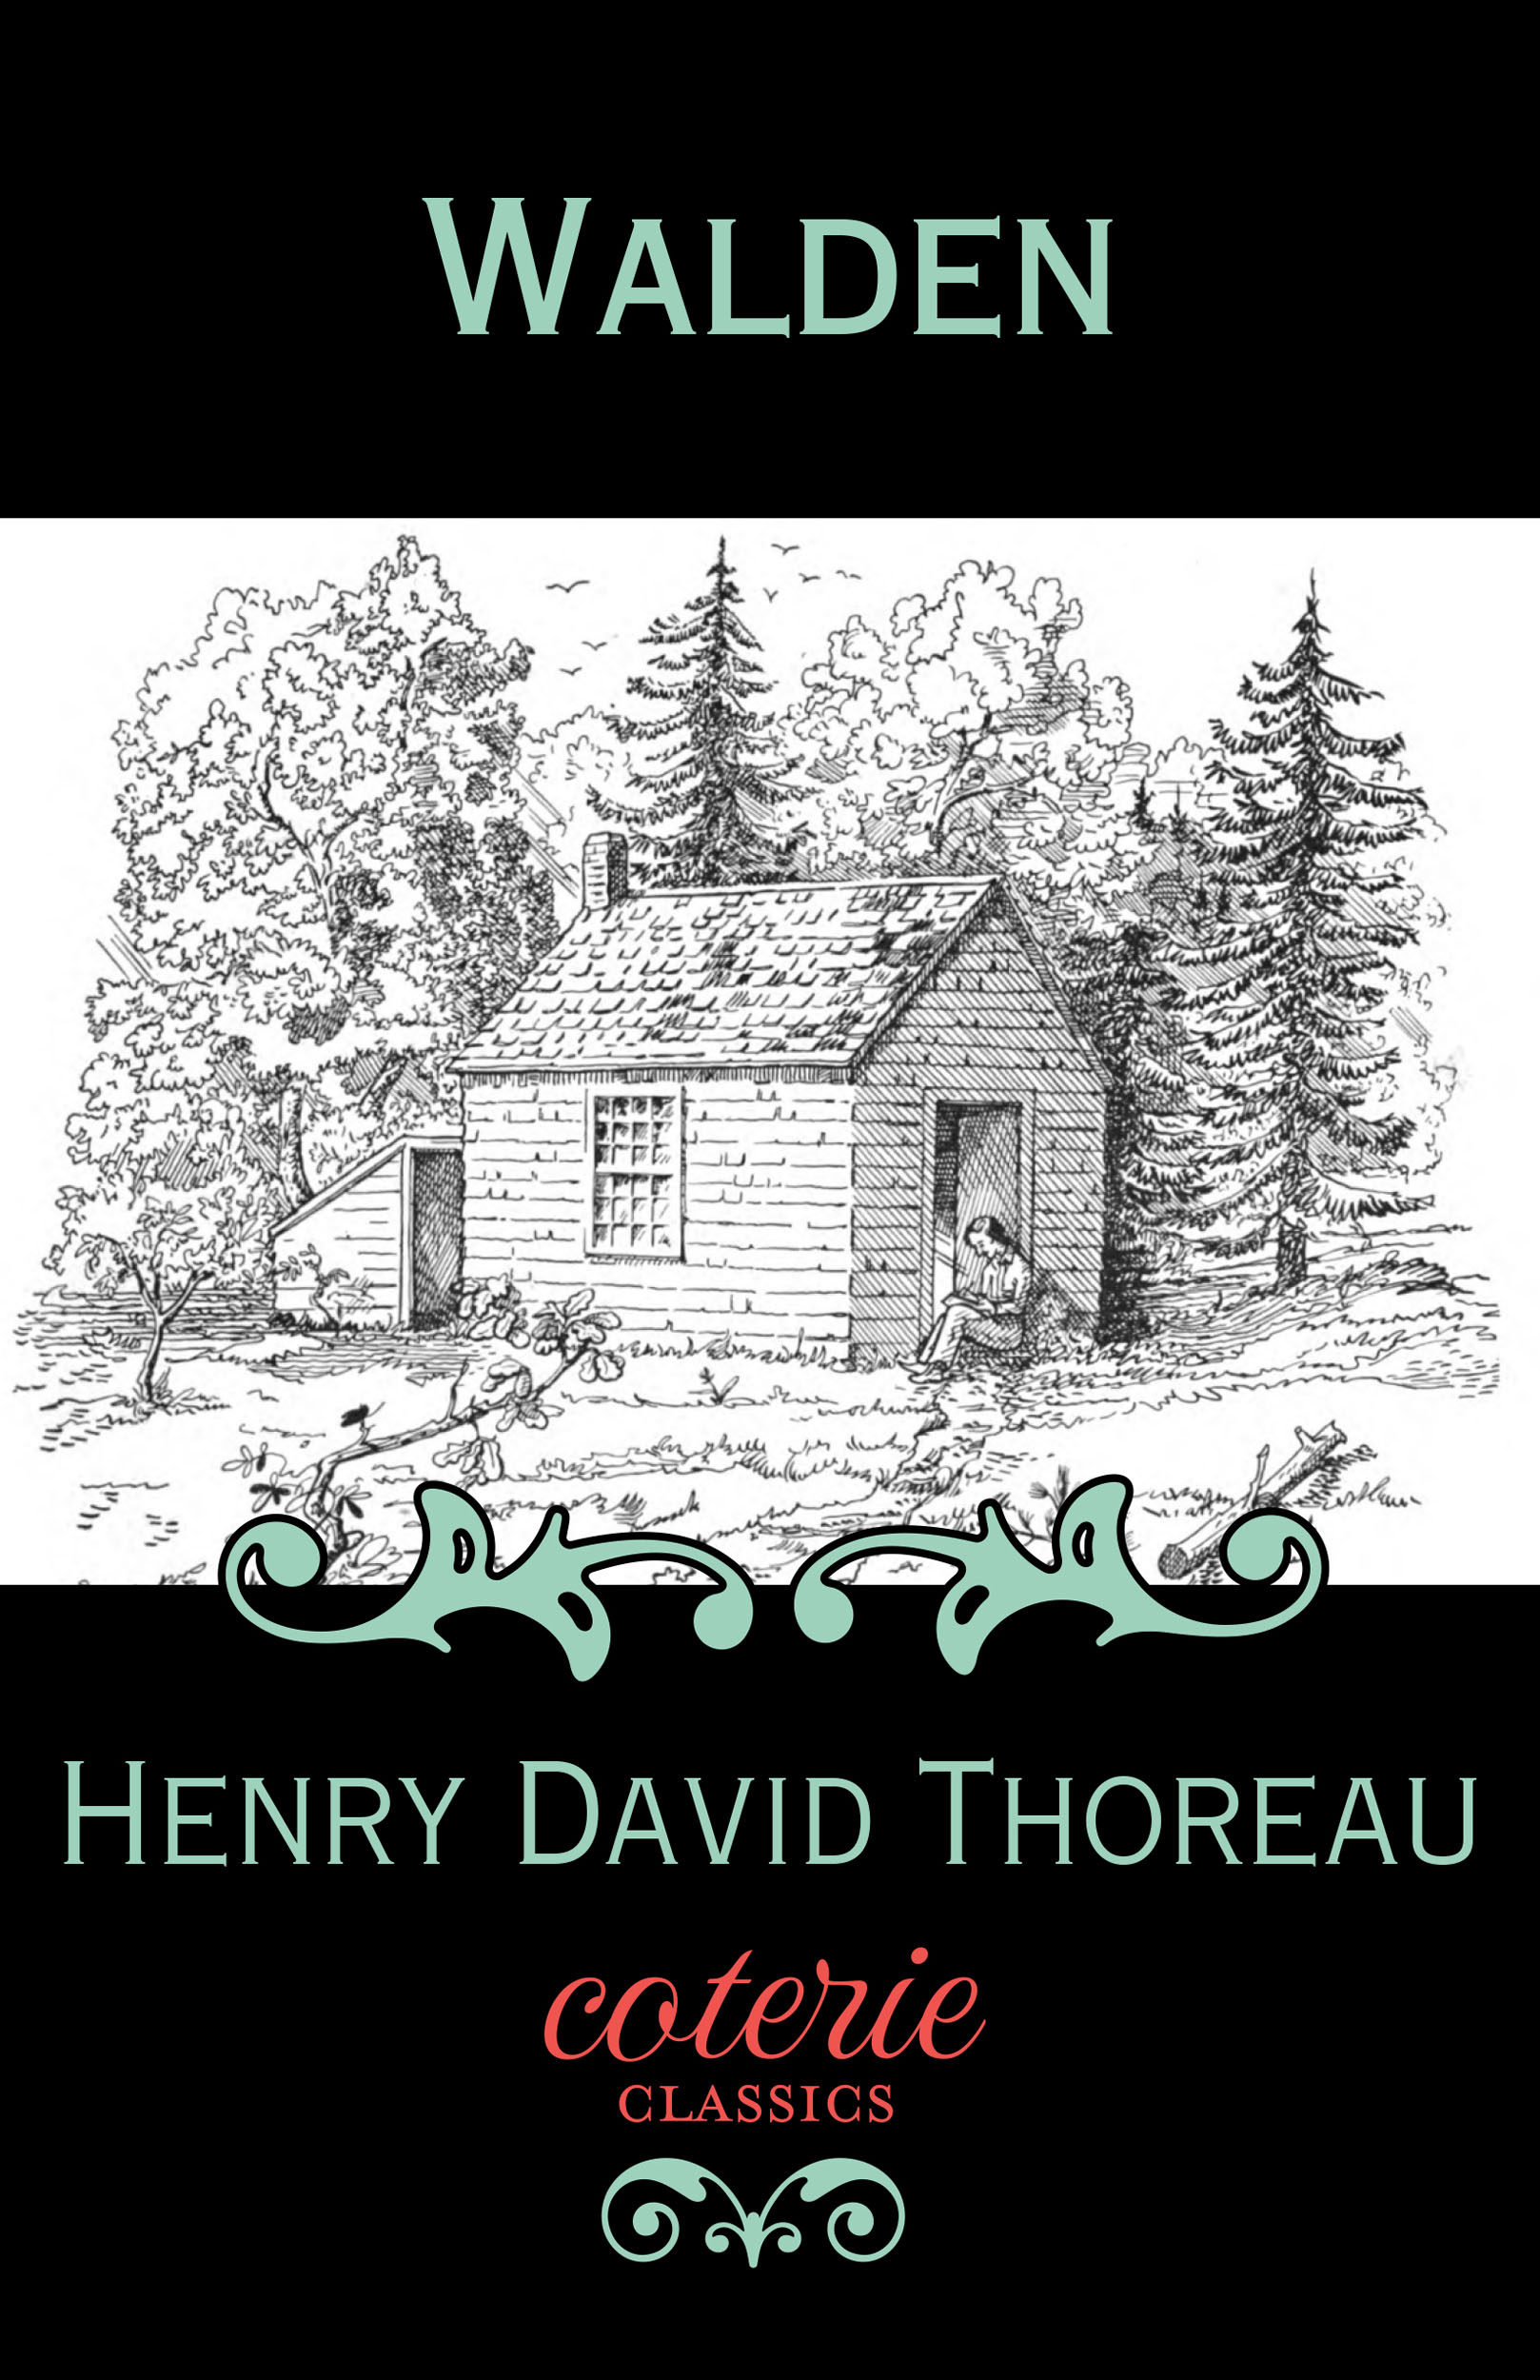 henry david thoreau where i lived and what i lived for pdf